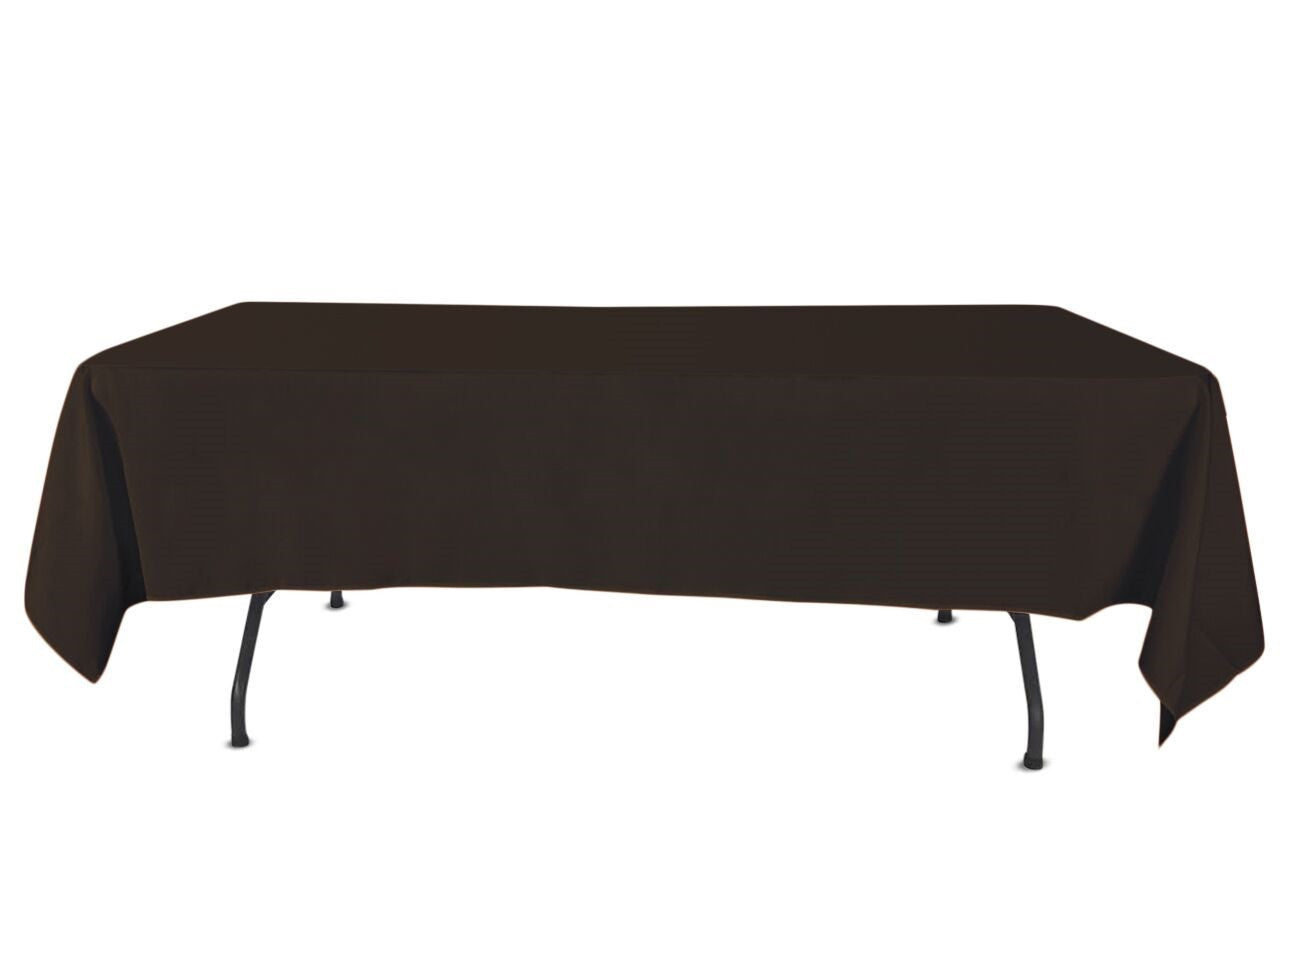 5 Nappes de Table Noires, Lin Tissu, 228 x 335 cm - pour Mariage